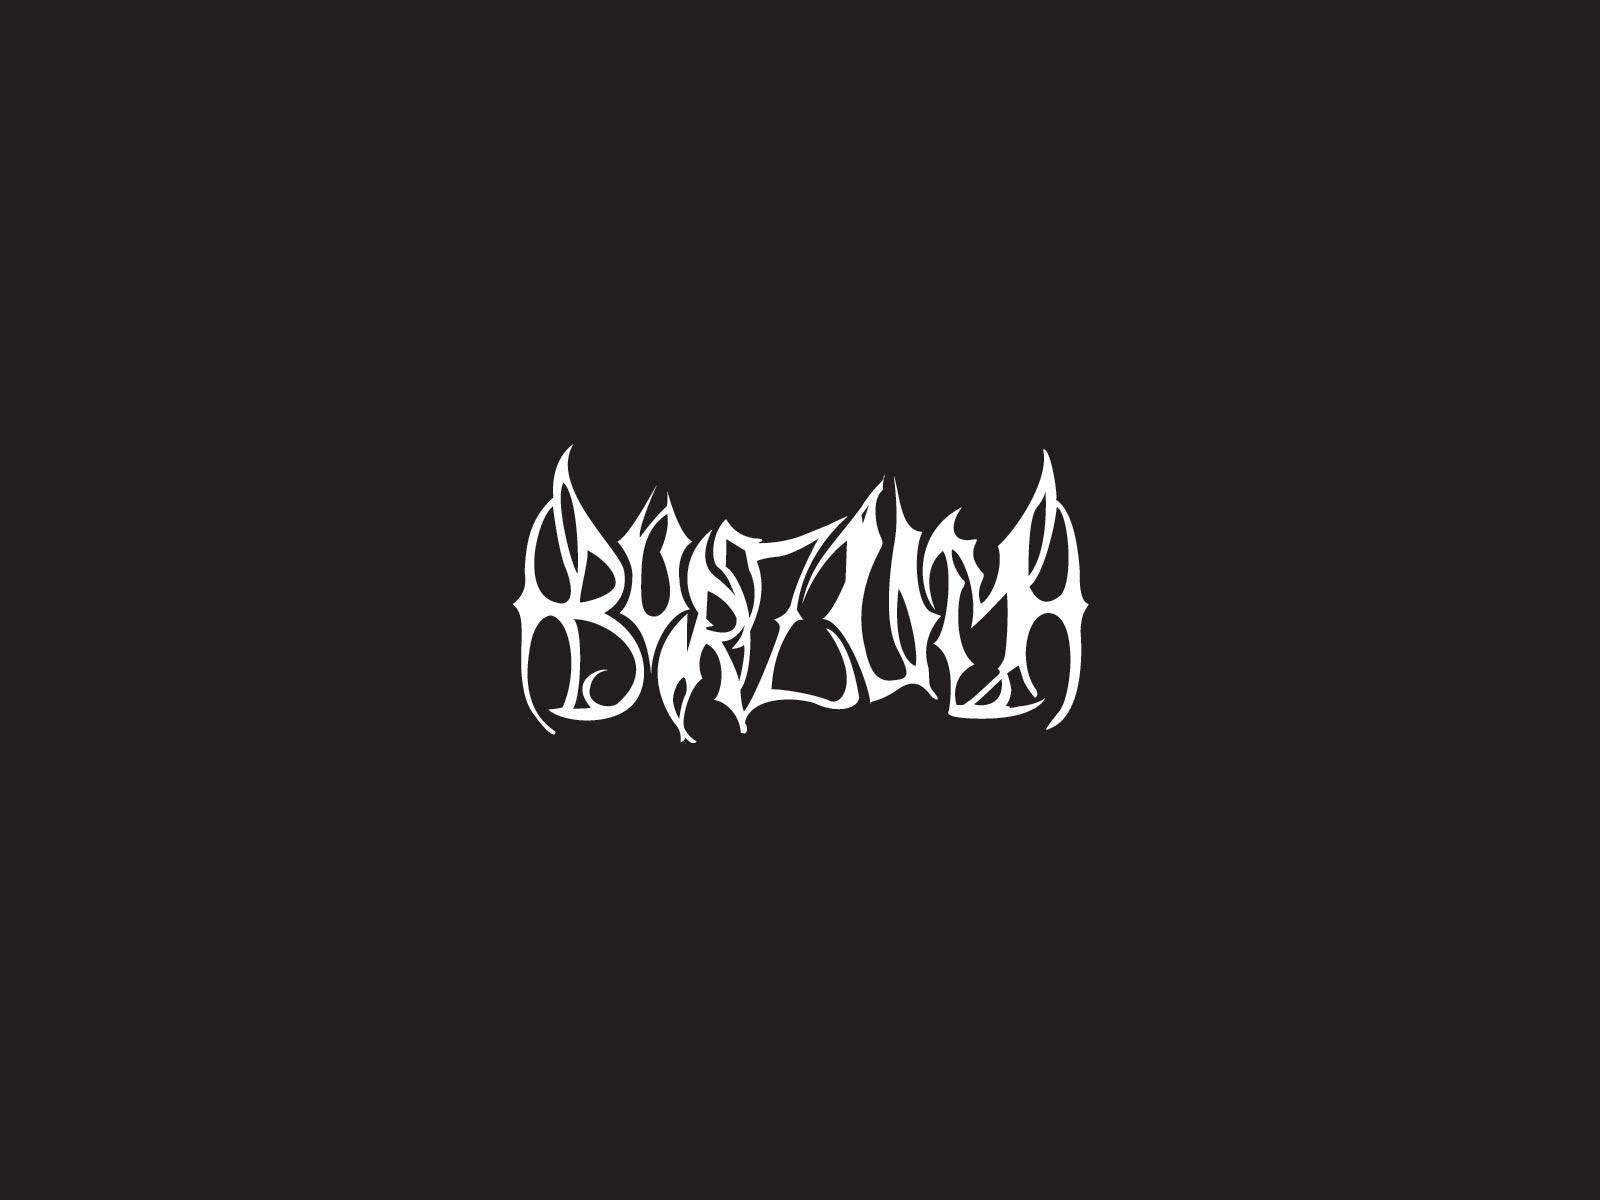 Black Metal Band Logos Rock Band Logos Metal Bands Logos Punk Bands Logos